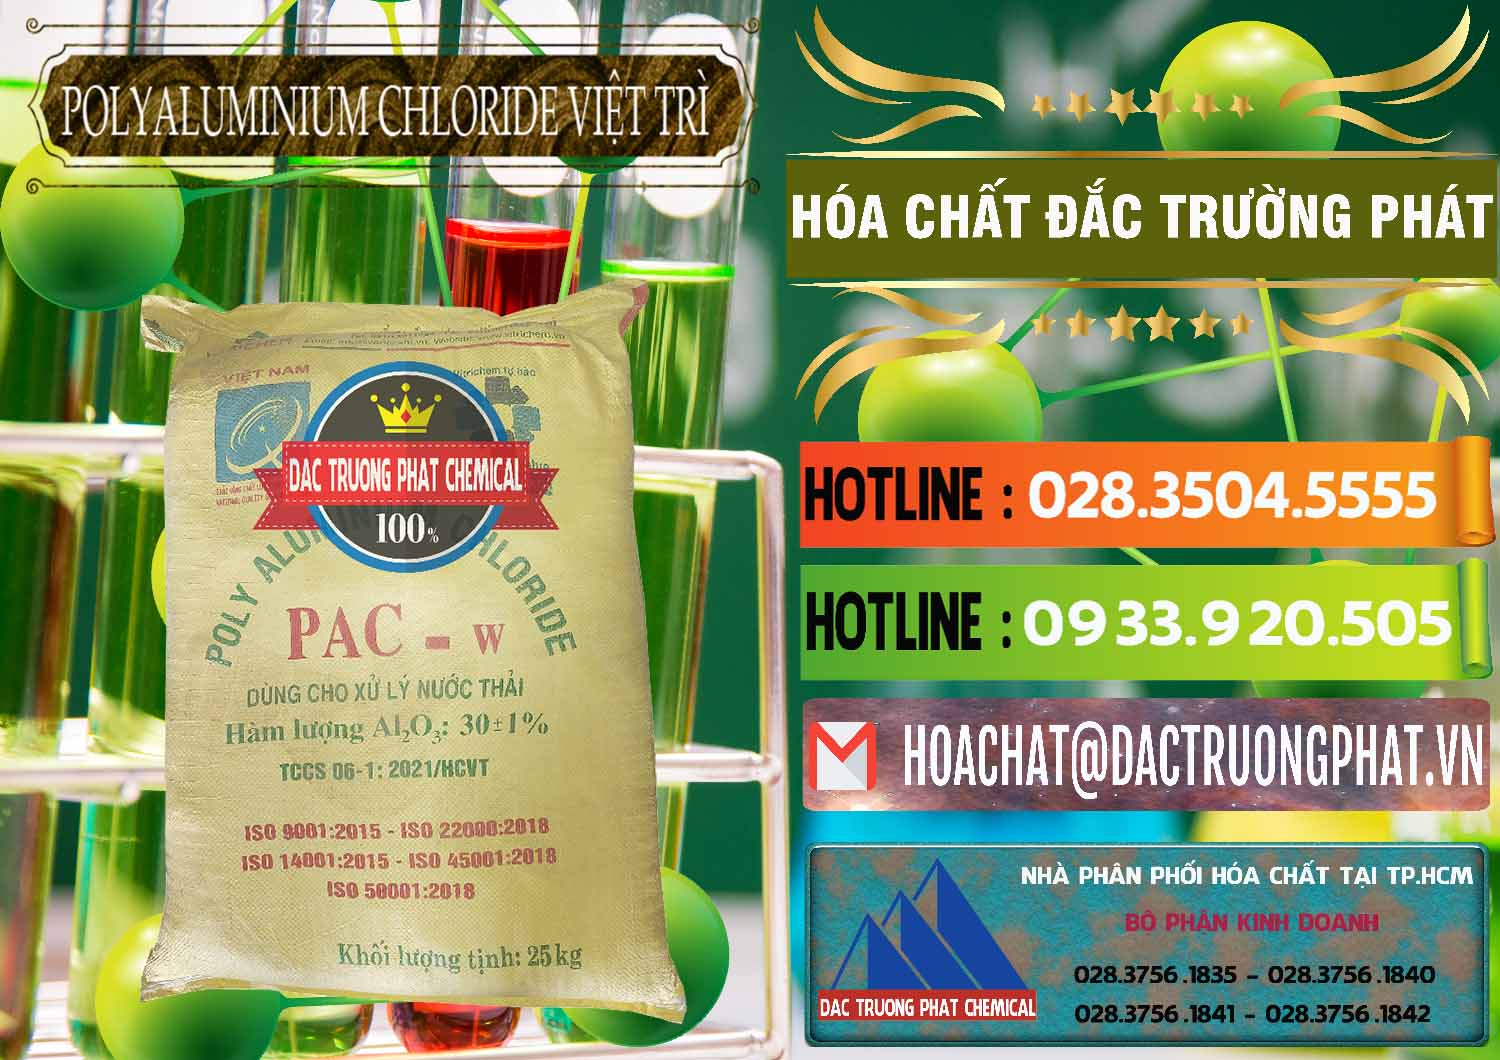 Đơn vị chuyên phân phối ( cung ứng ) PAC - Polyaluminium Chloride Việt Trì Việt Nam - 0487 - Đơn vị chuyên kinh doanh ( bán ) hóa chất tại TP.HCM - cungcaphoachat.com.vn